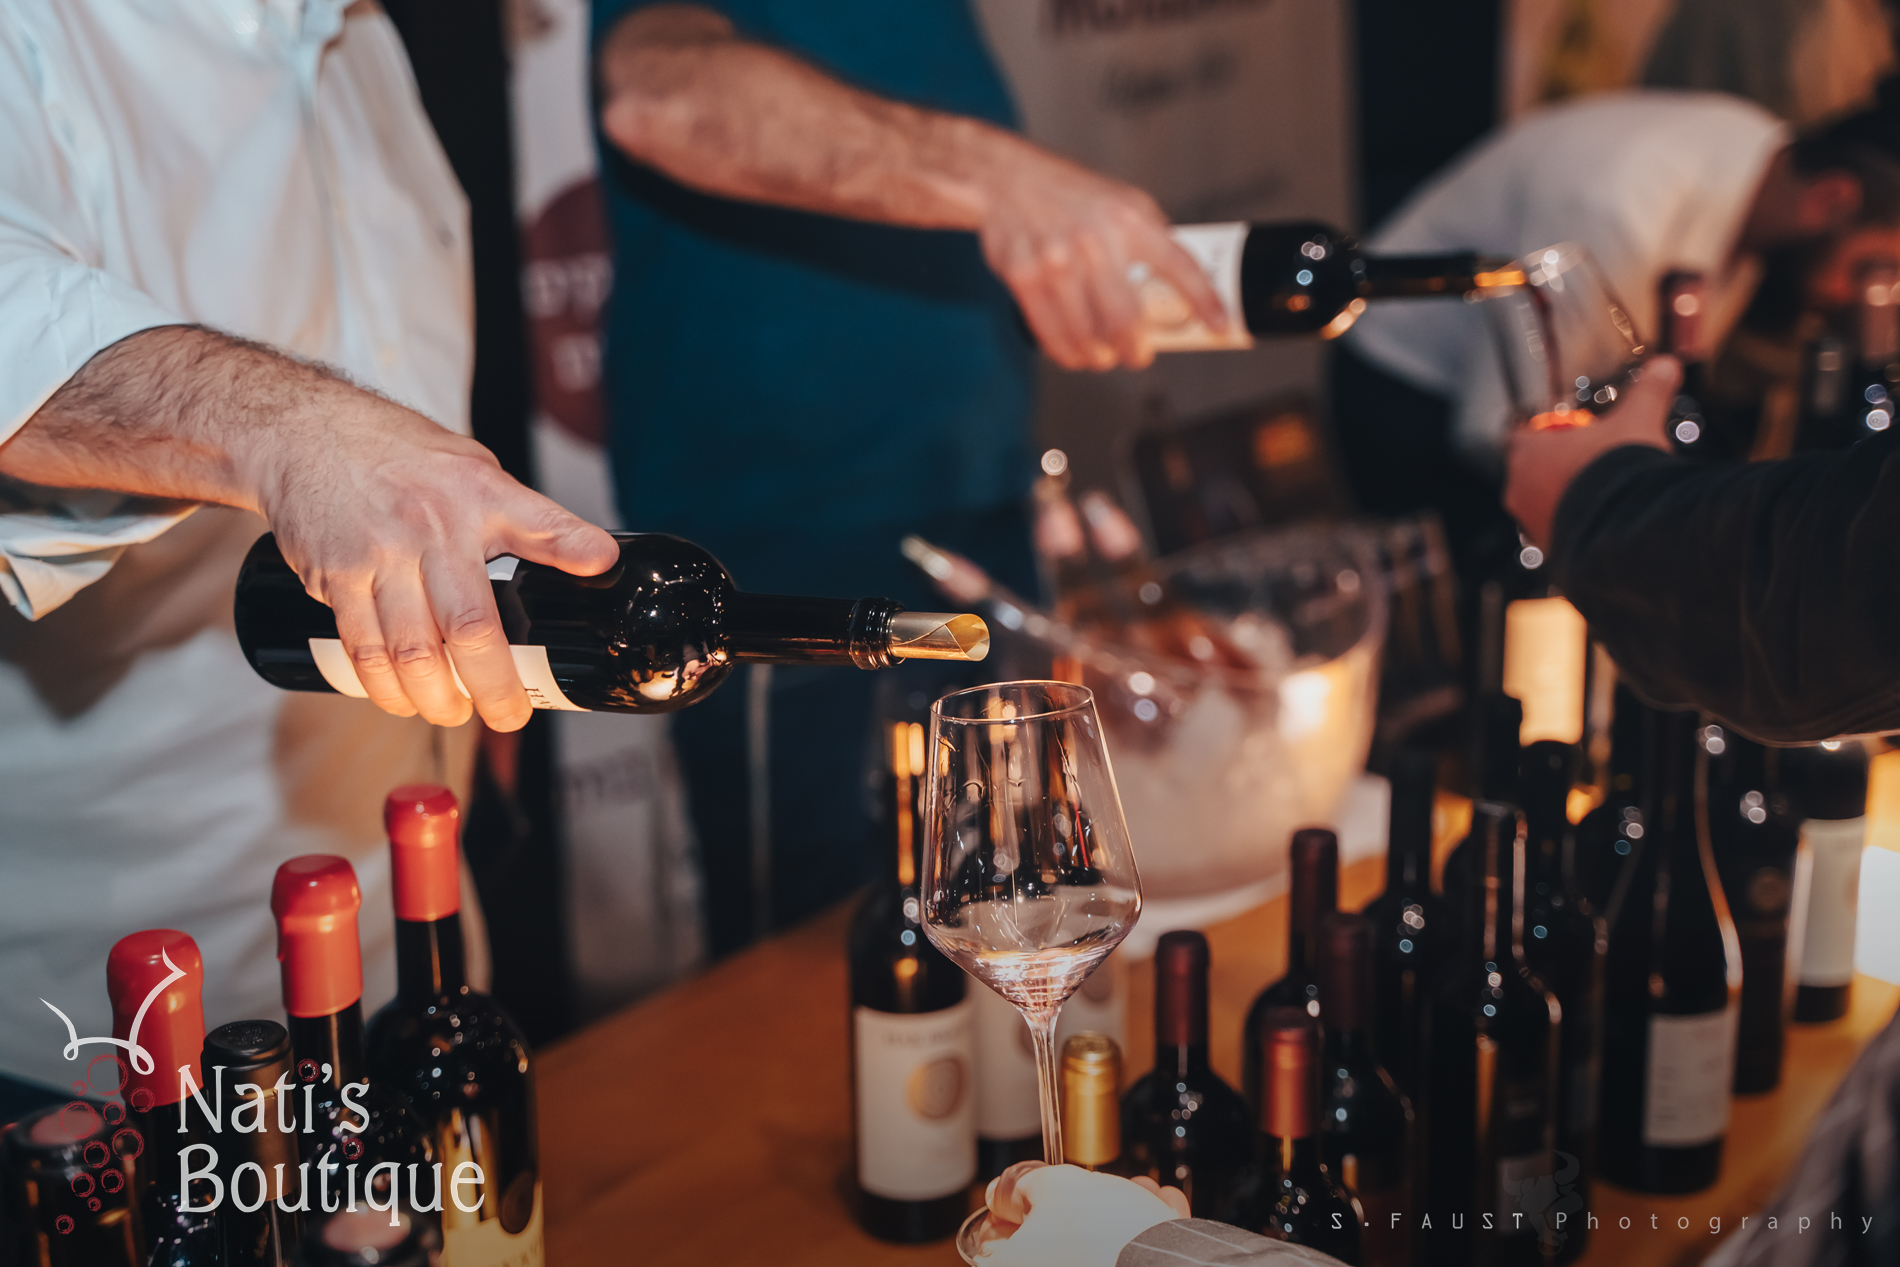 יריד טעימות יין בקיסריה ששליש מהכנסותיו תרומה למערך הלוחם צילום שמוליק פאוסט